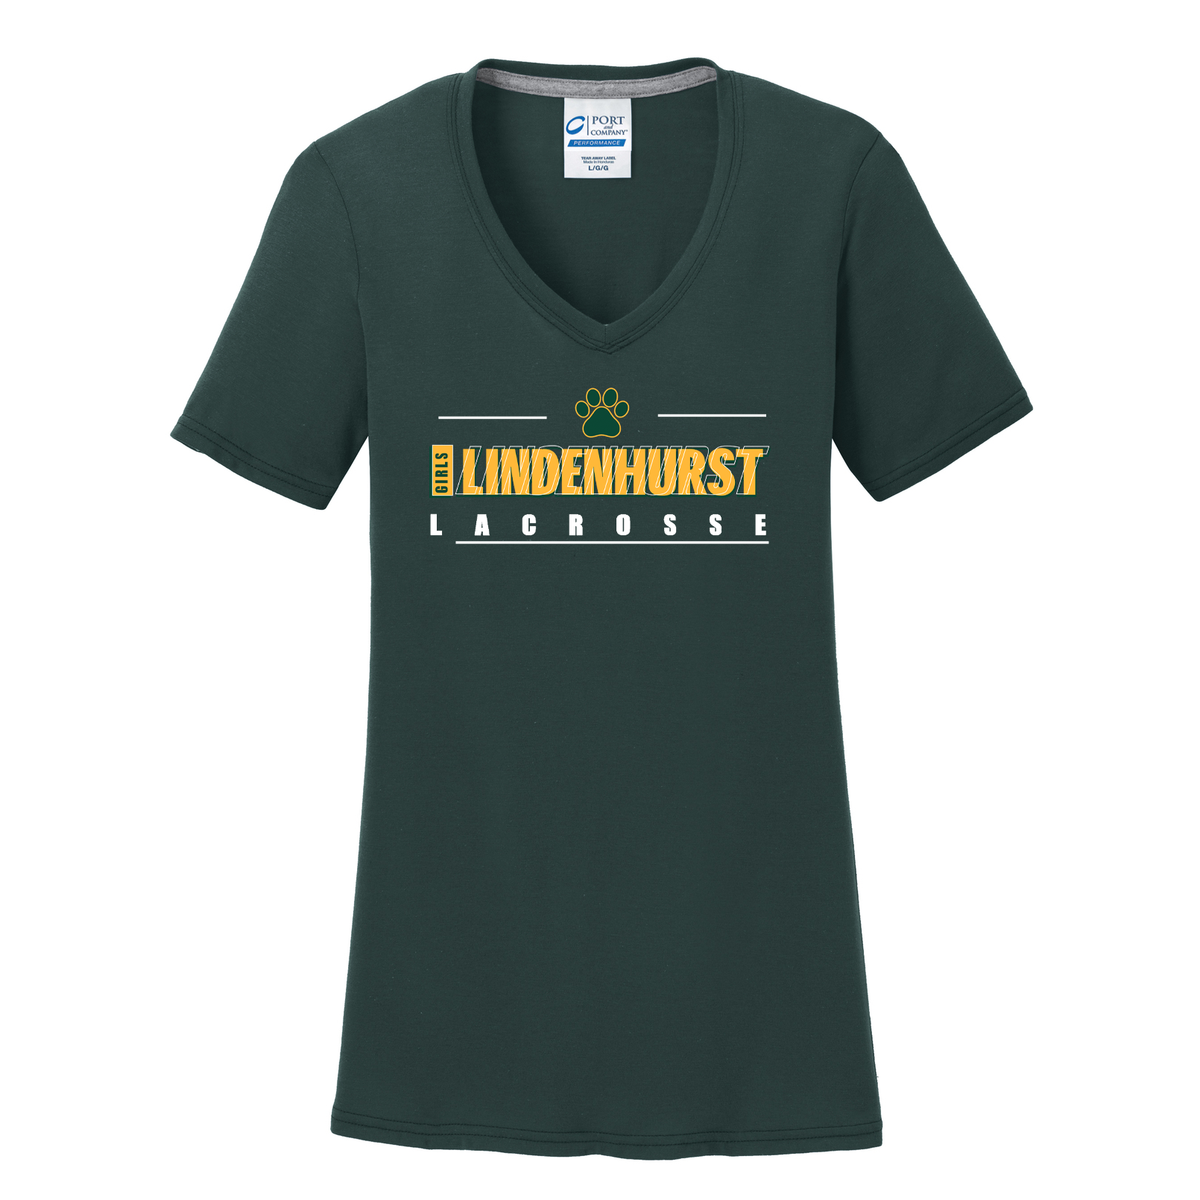 Lindenhurst Girls Lacrosse Women's T-Shirt